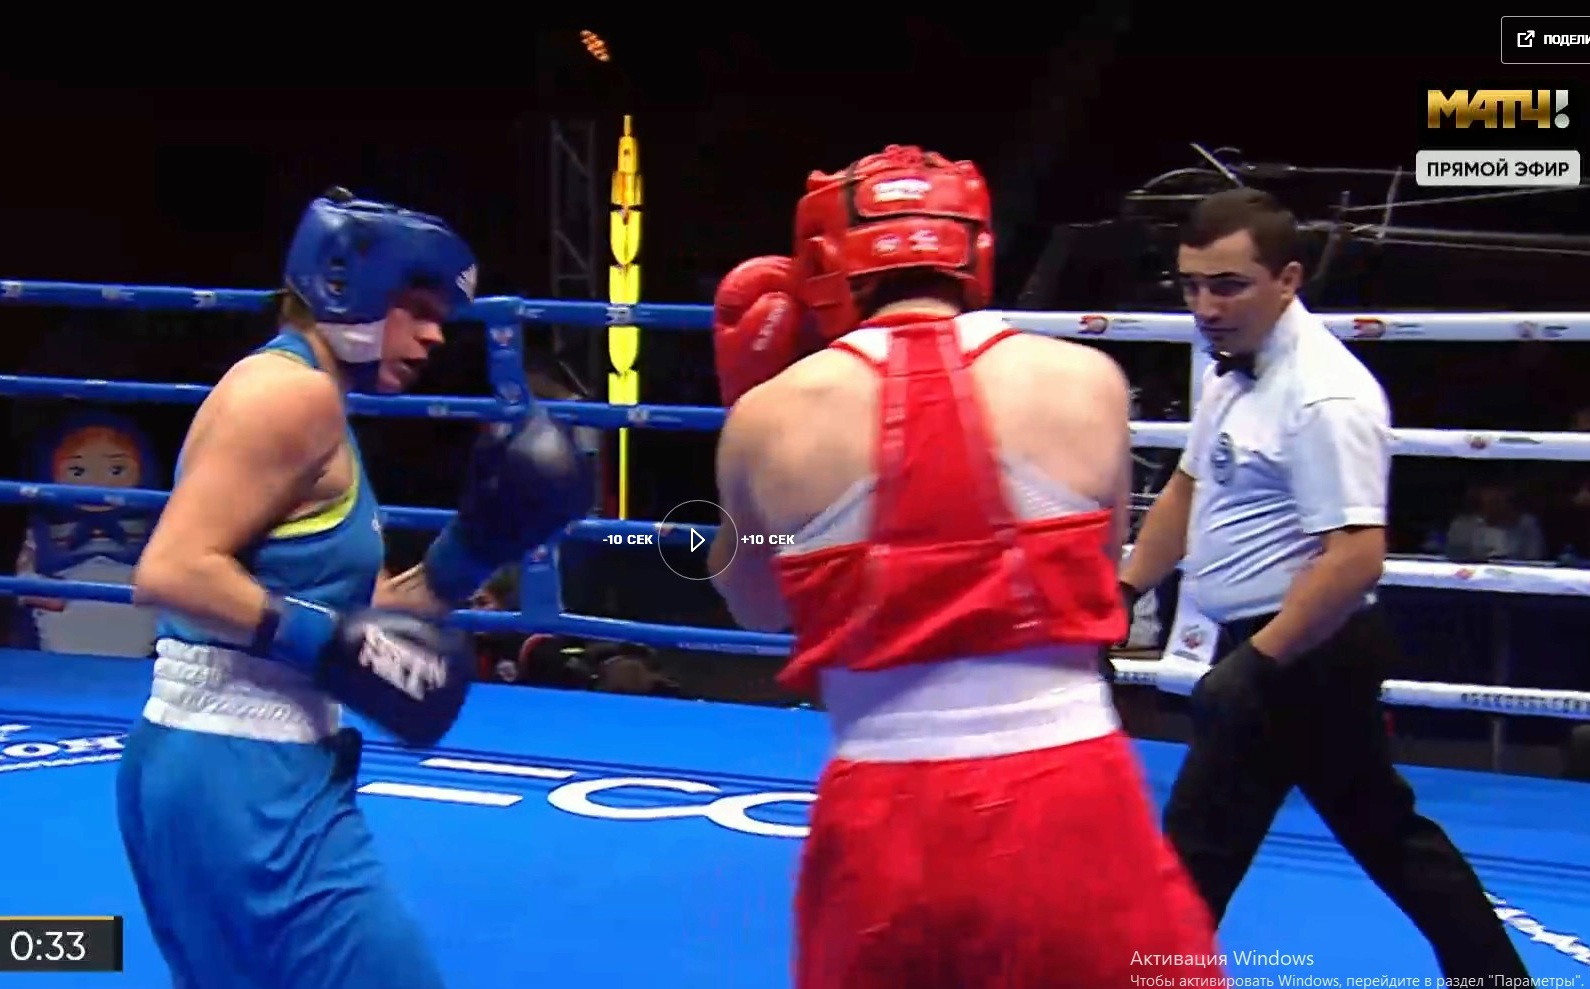 Кинешемка Юлия Чернобородова вышла в финал Чемпионата России по боксу и стала мастером спорта